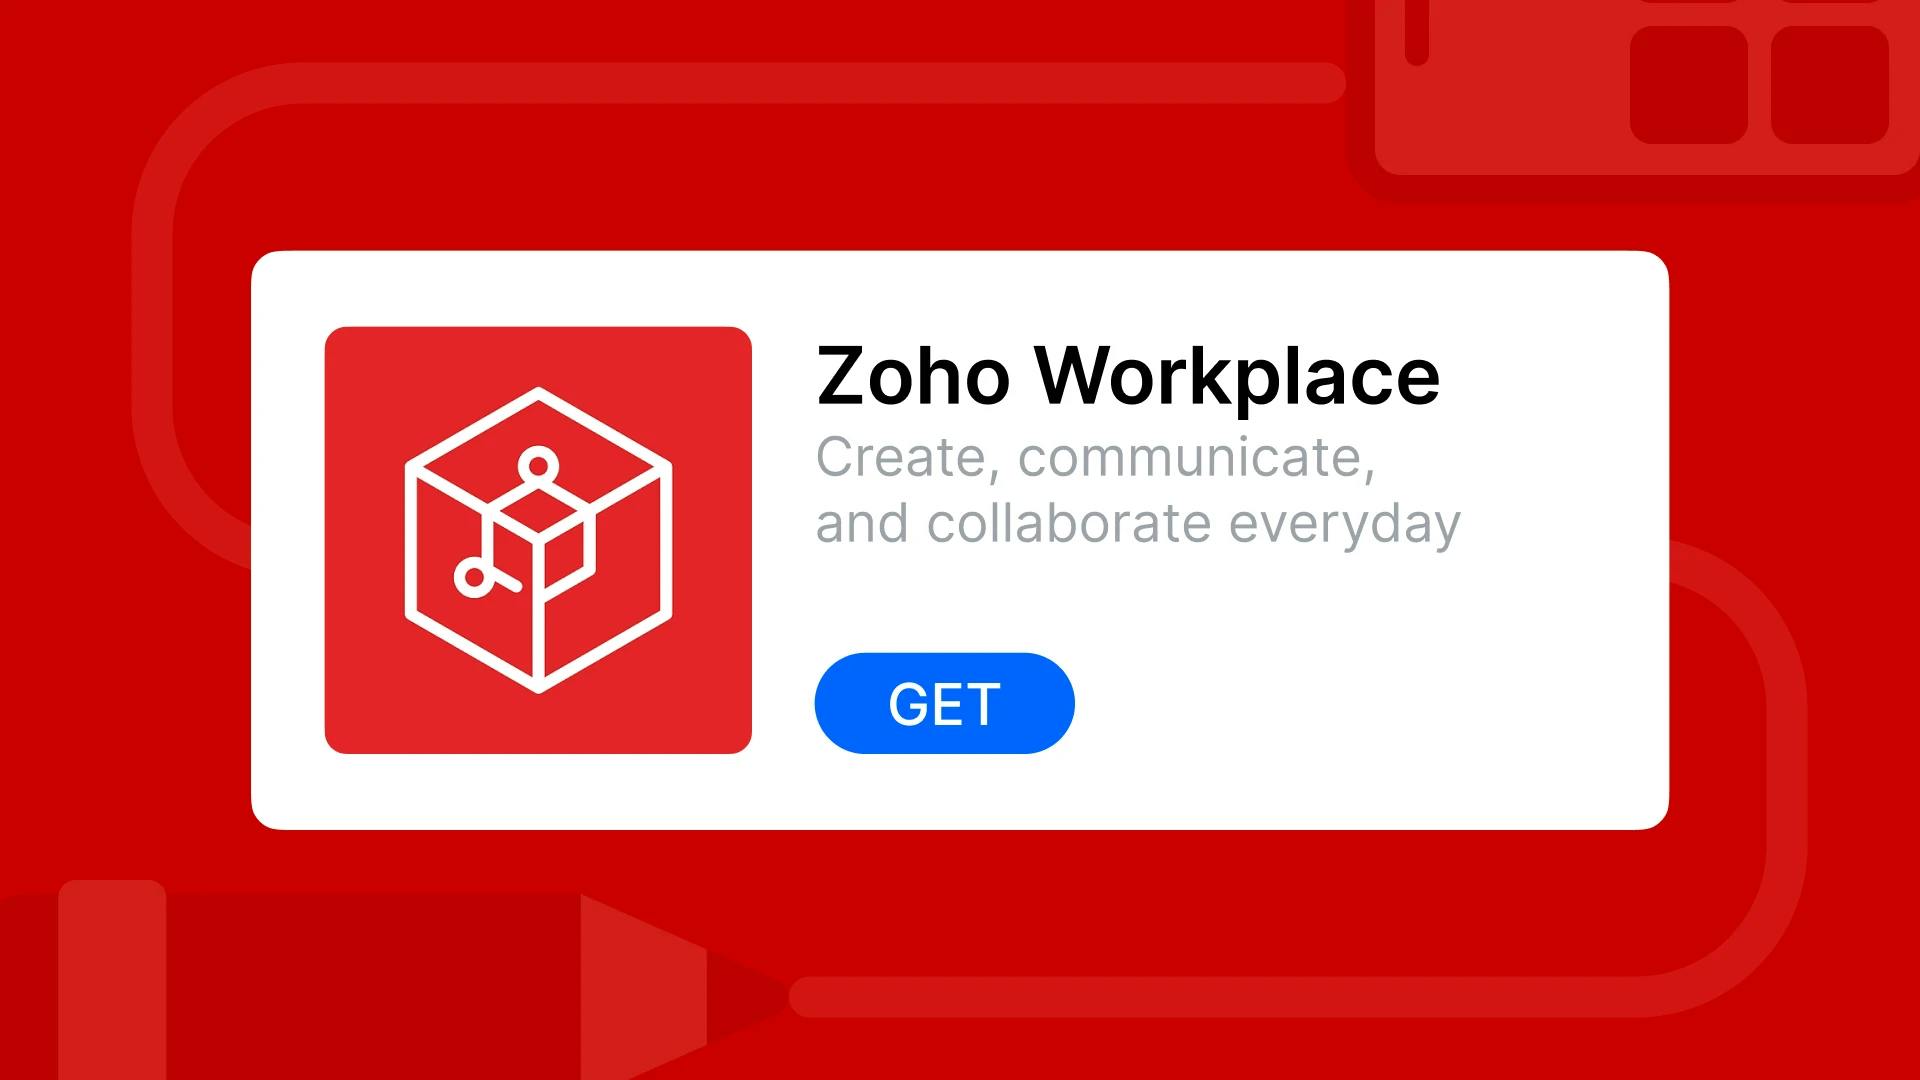 zoho_workplace